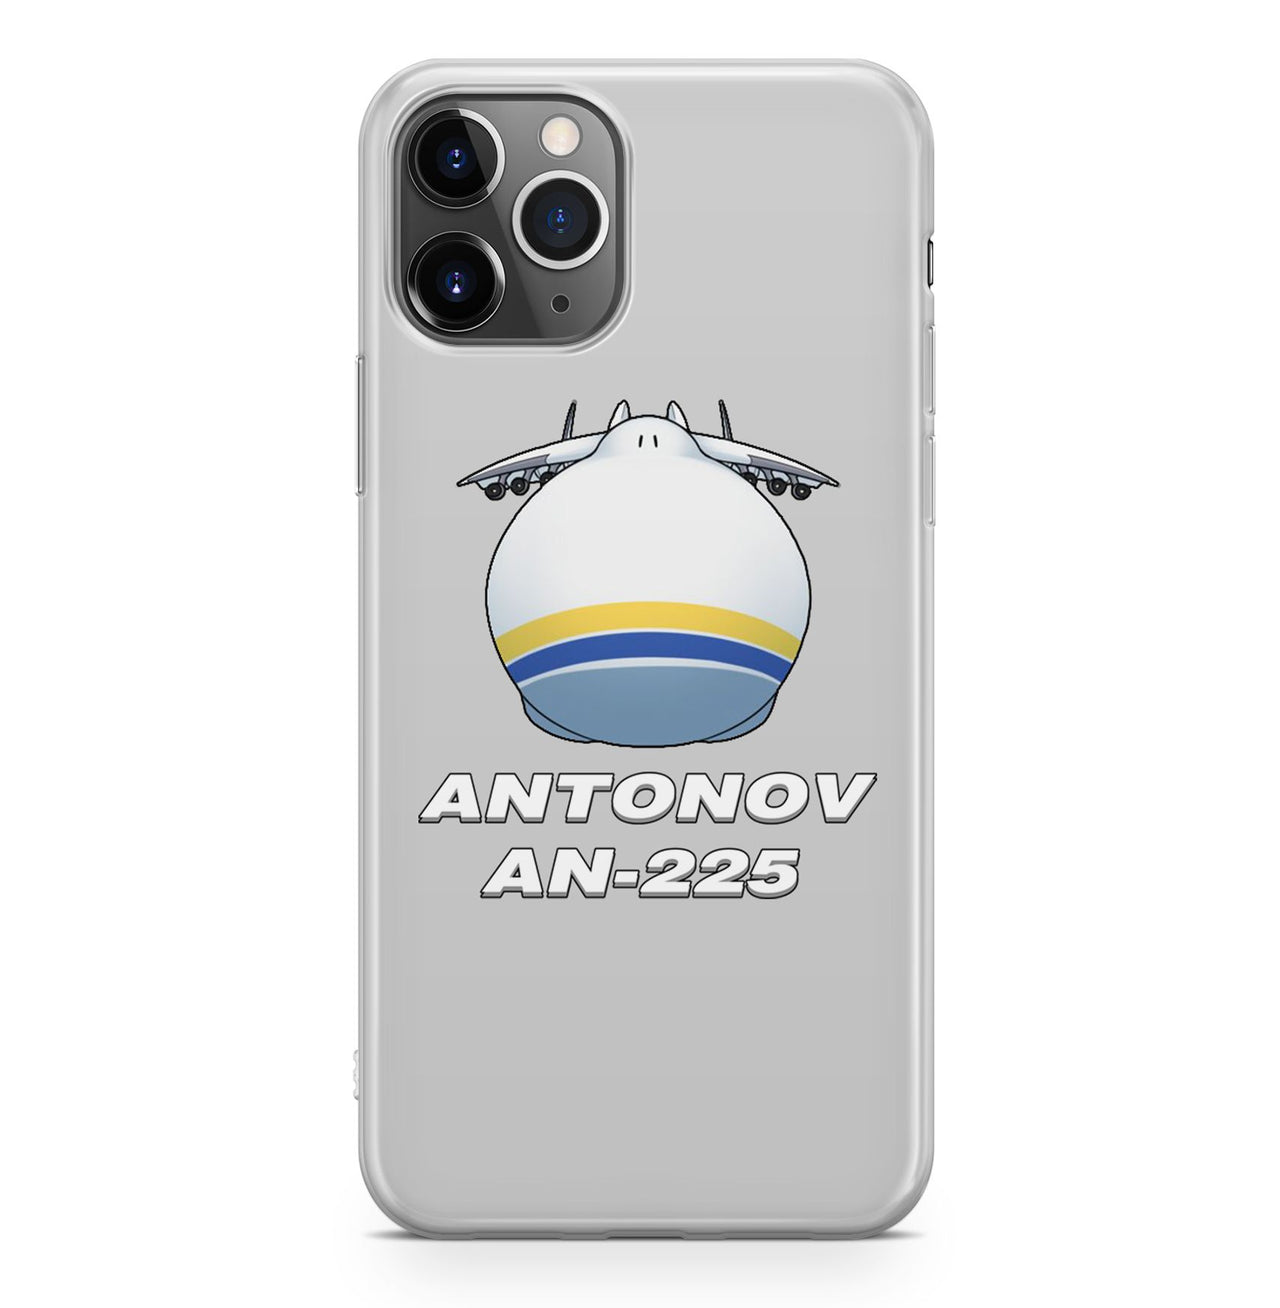 Antonov AN-225 (20) Designed iPhone Cases